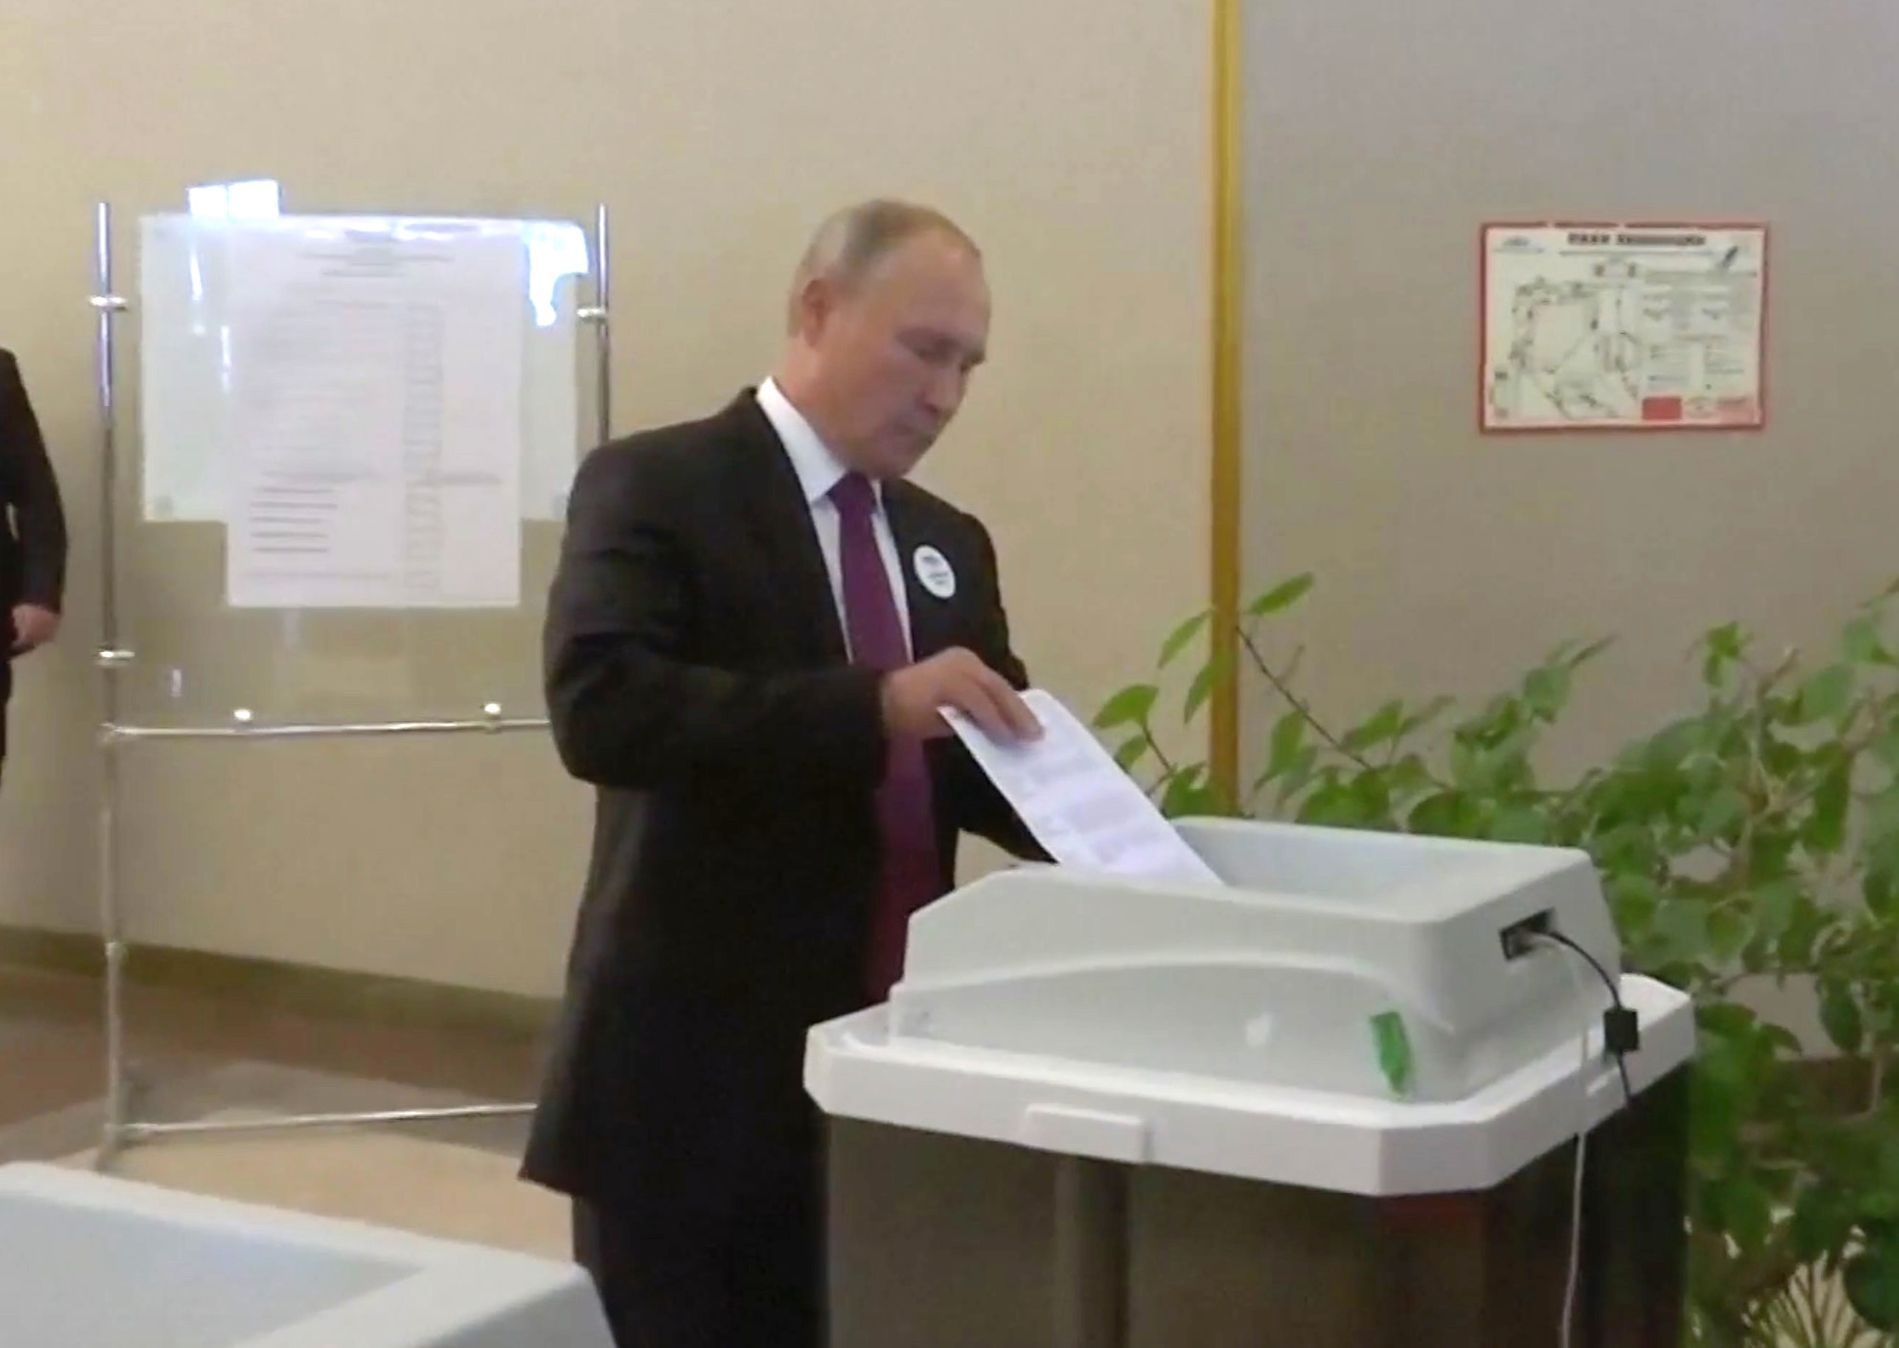 Hlasovací přístroj odmítal Putinův hlas. Ruský prezident řešil při volbách technický problém